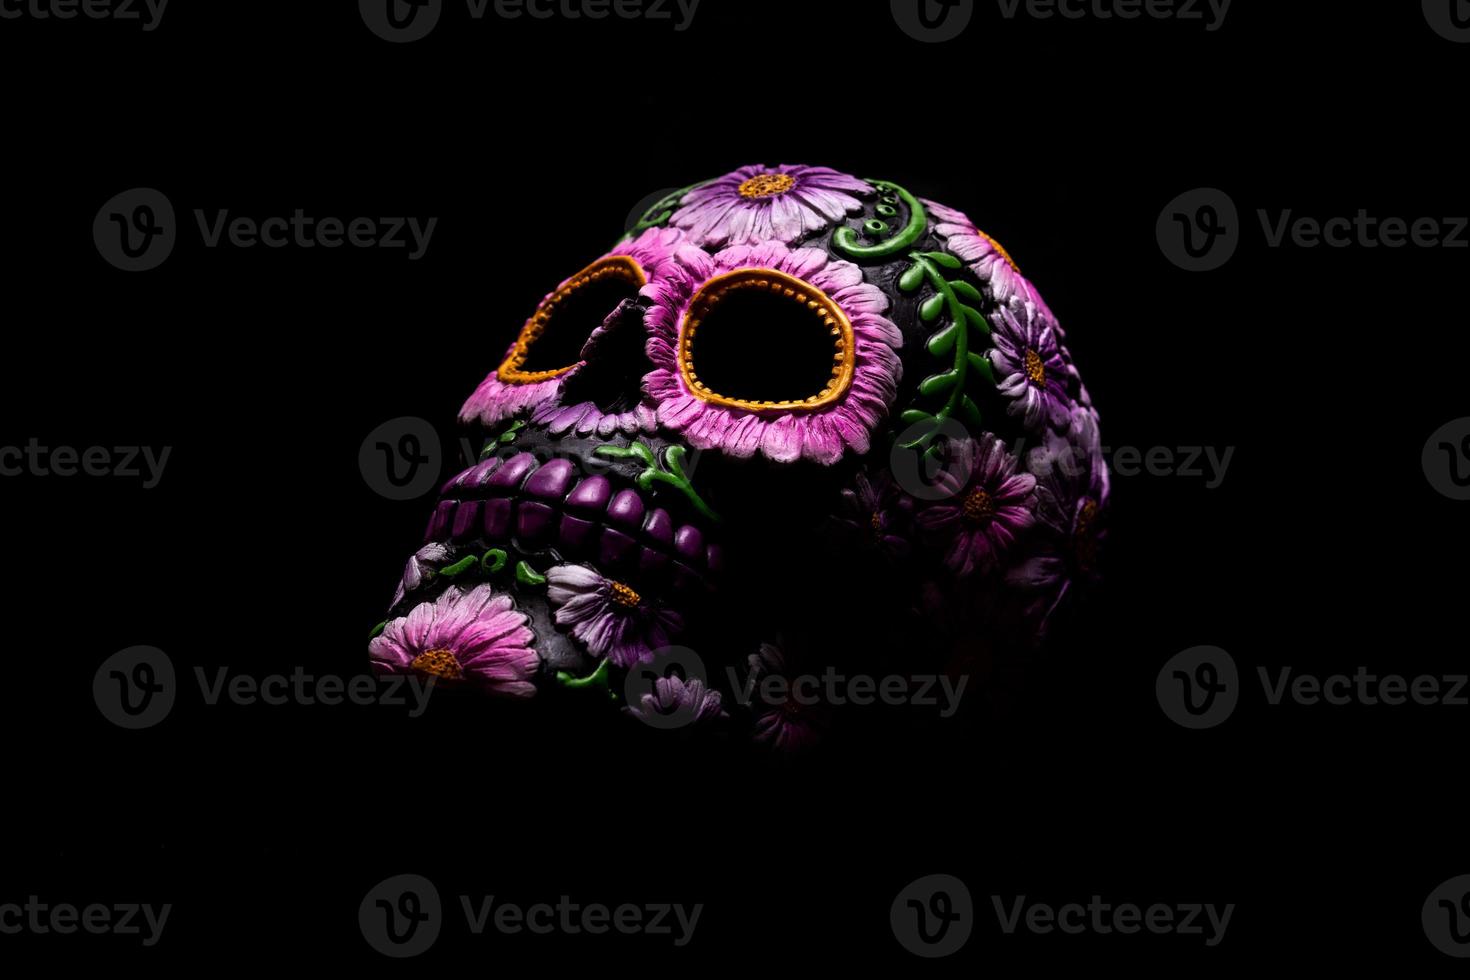 crâne mexicain typique avec des fleurs peintes photo